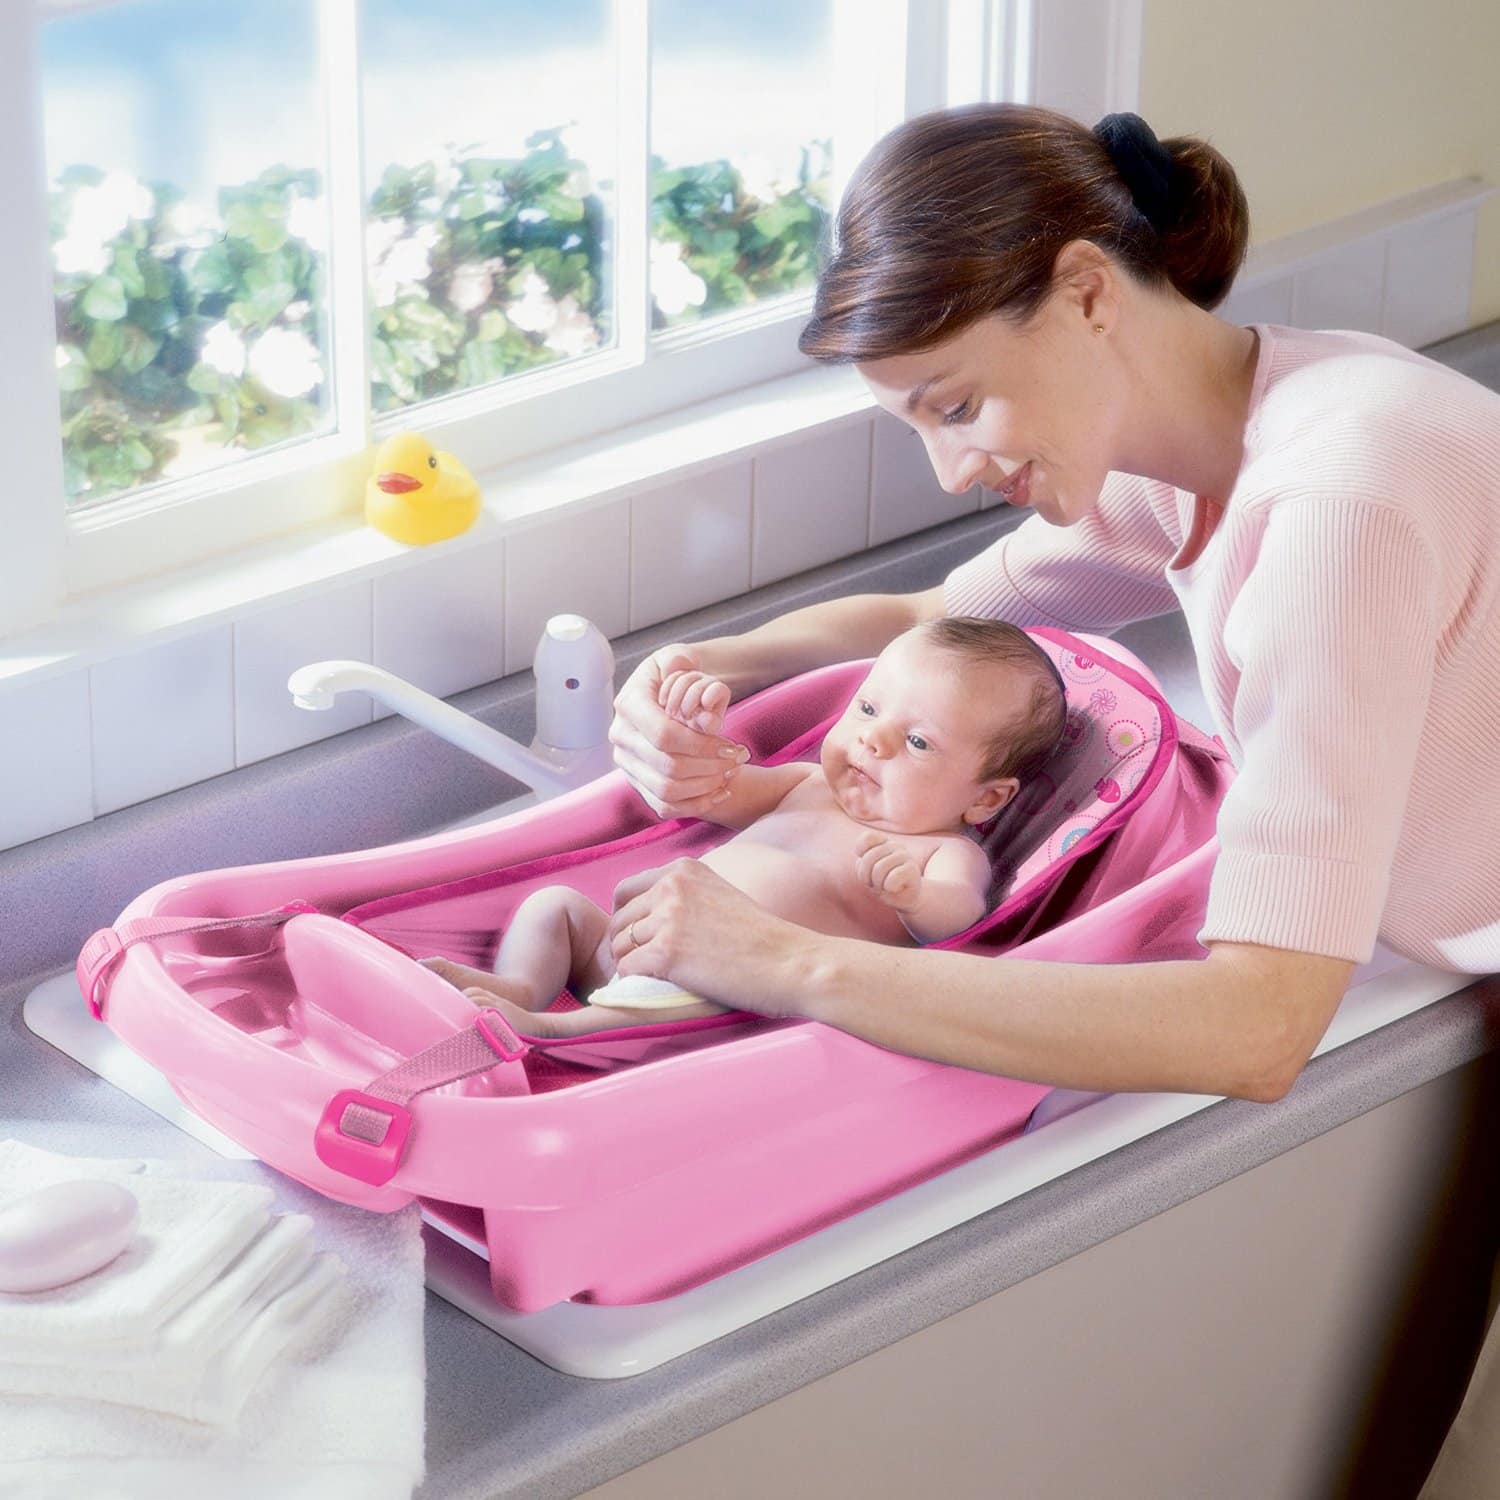 Thuisland werknemer kas Beste babybadje kopen tips - Koddie